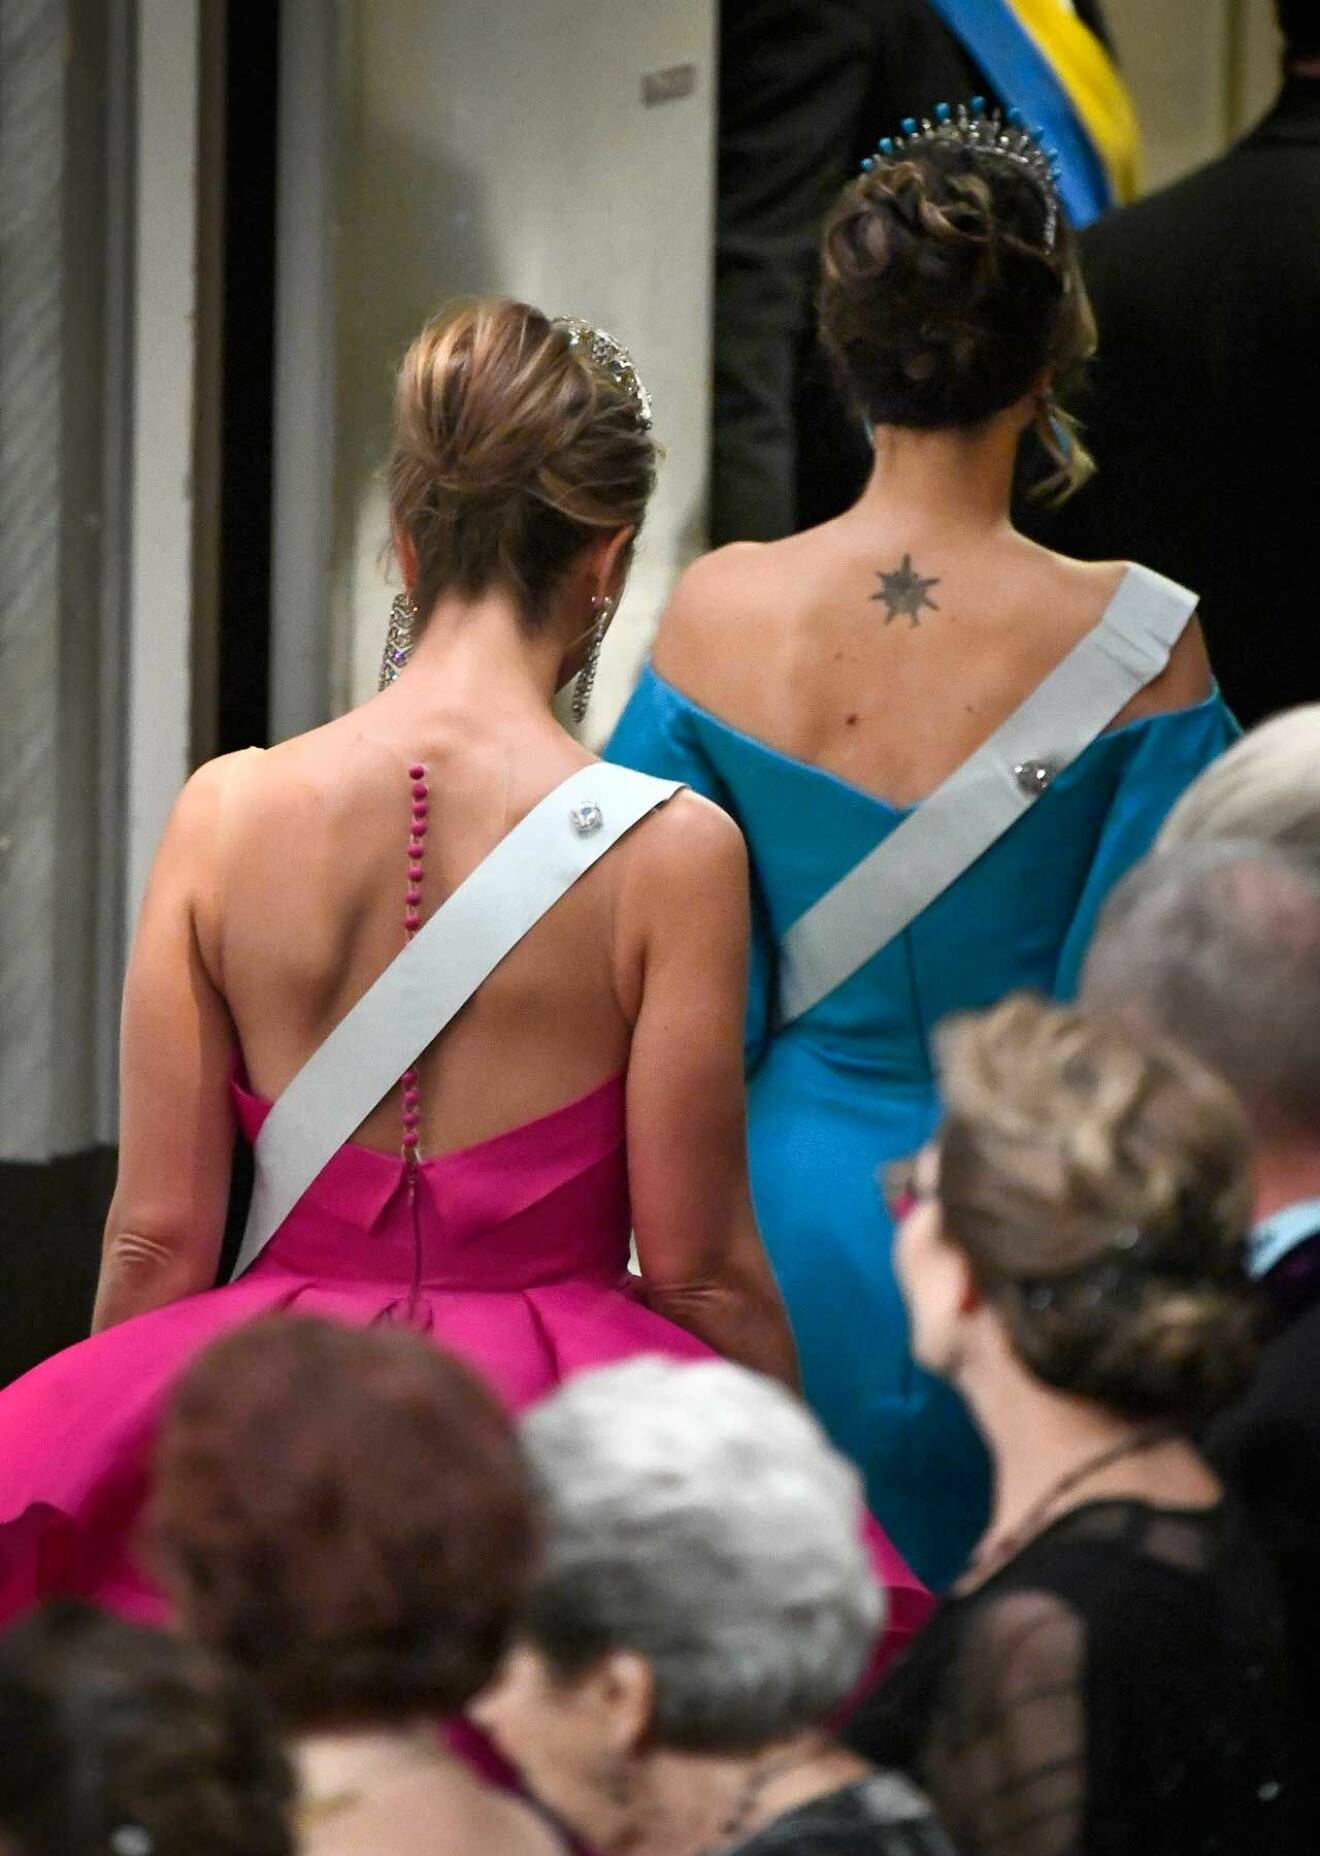 Detta är en av prinsessan Sofias tre tatueringar. De andra två sitter på ankeln respektive ryggen.